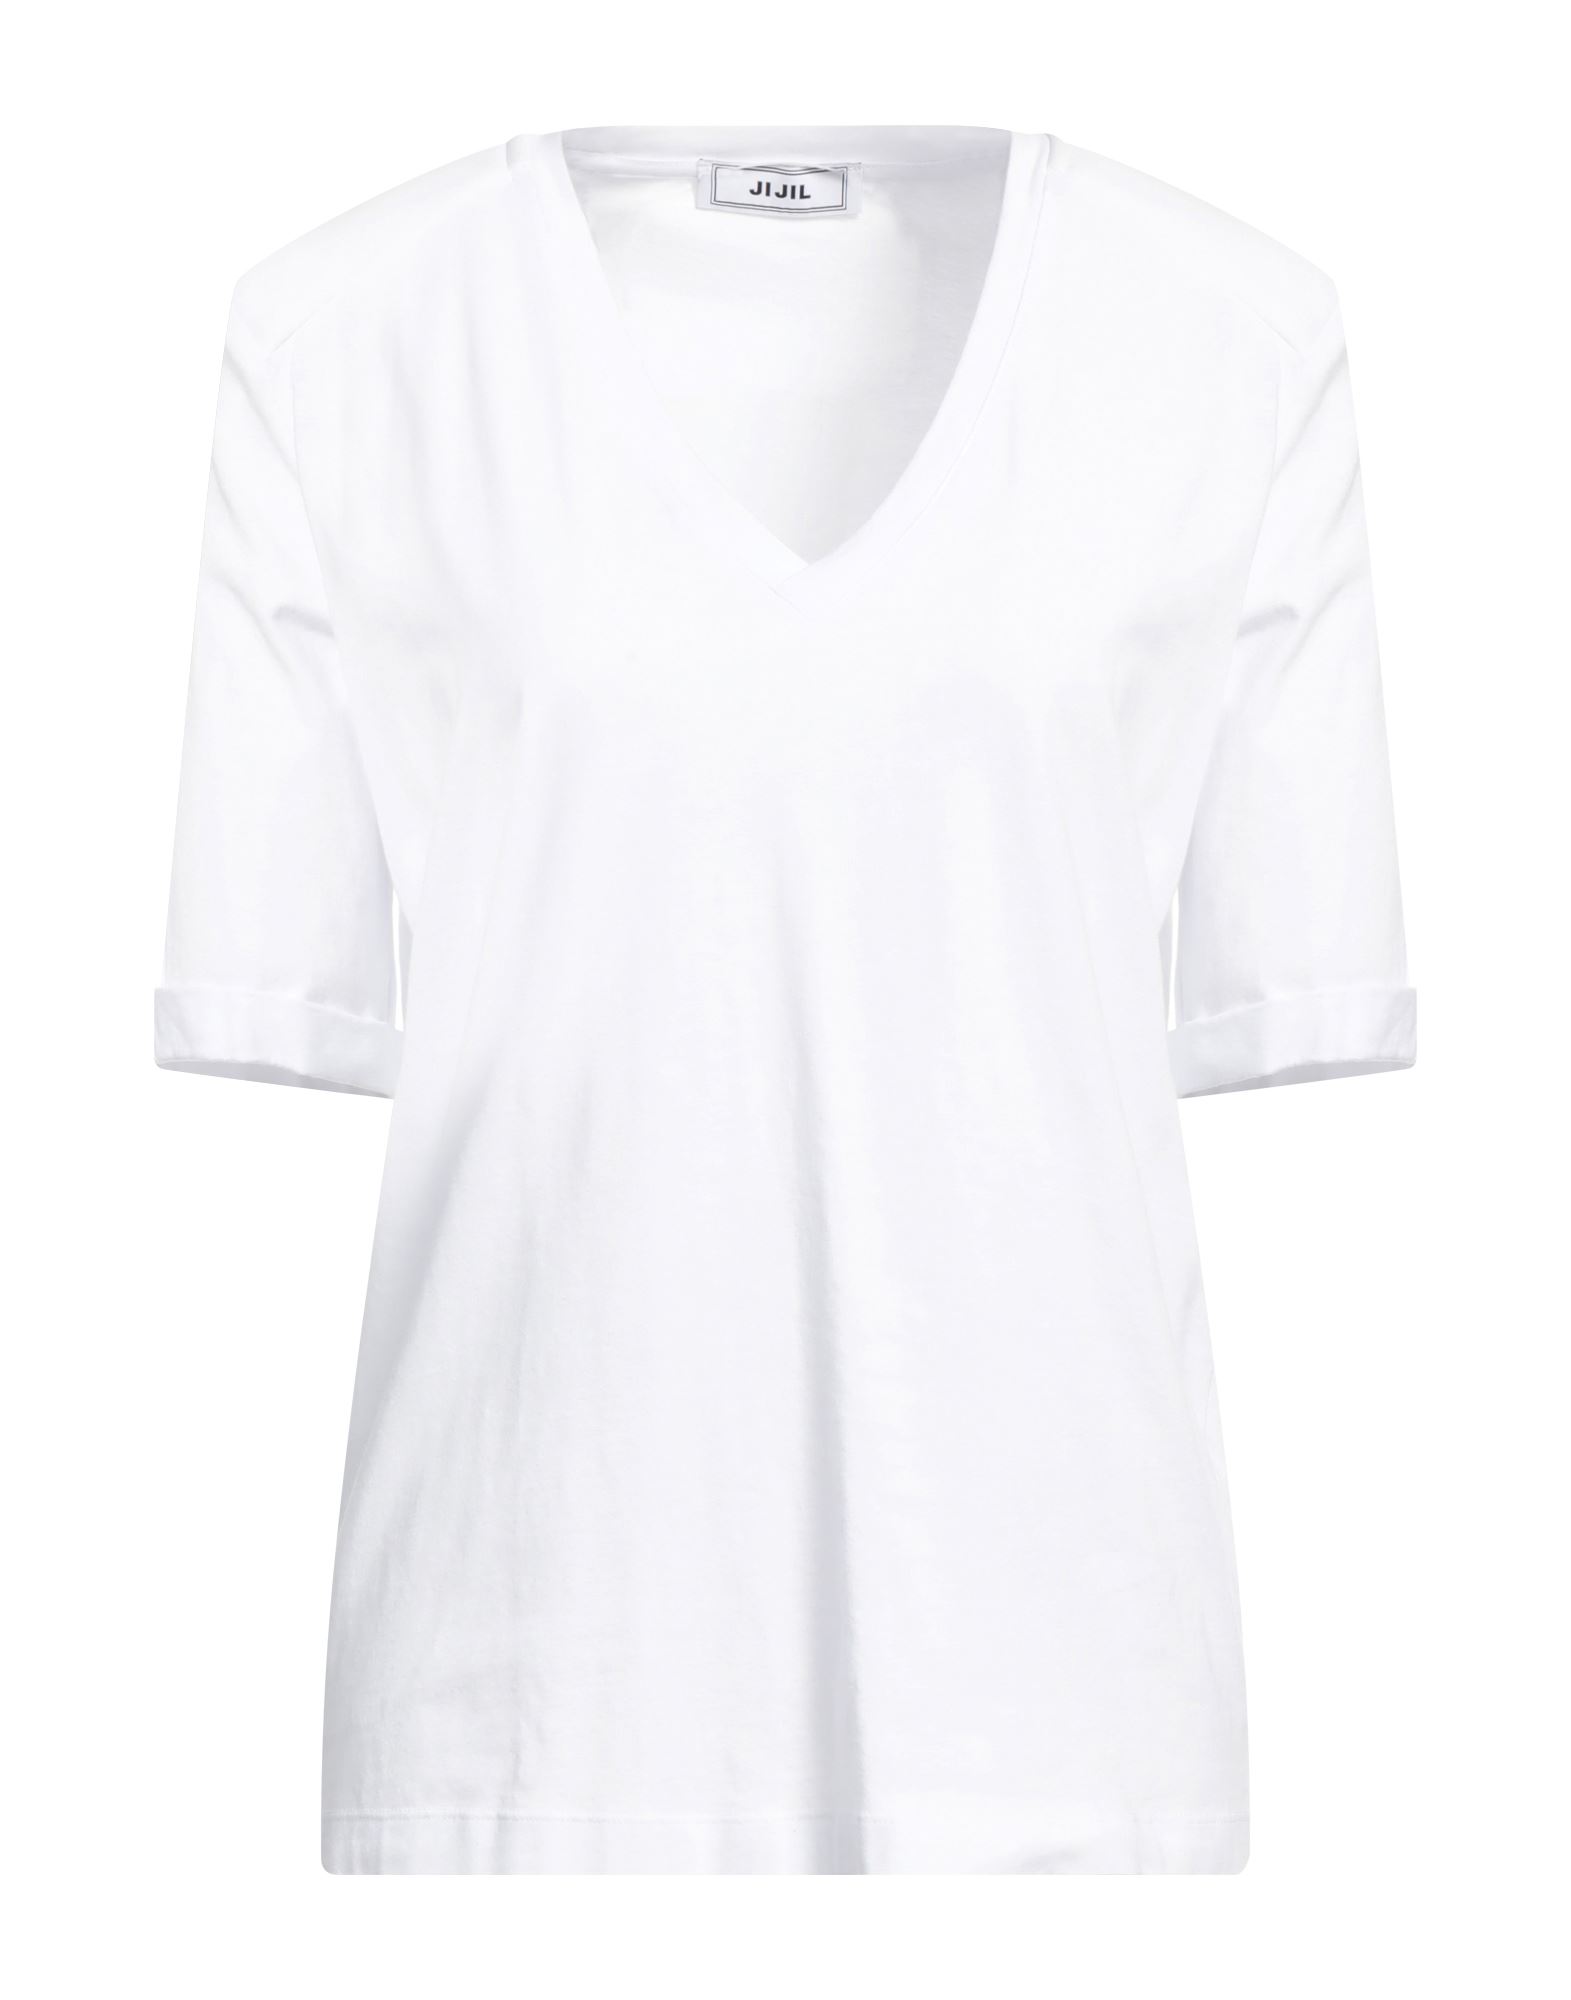 Shop Jijil Woman T-shirt White Size 4 Cotton